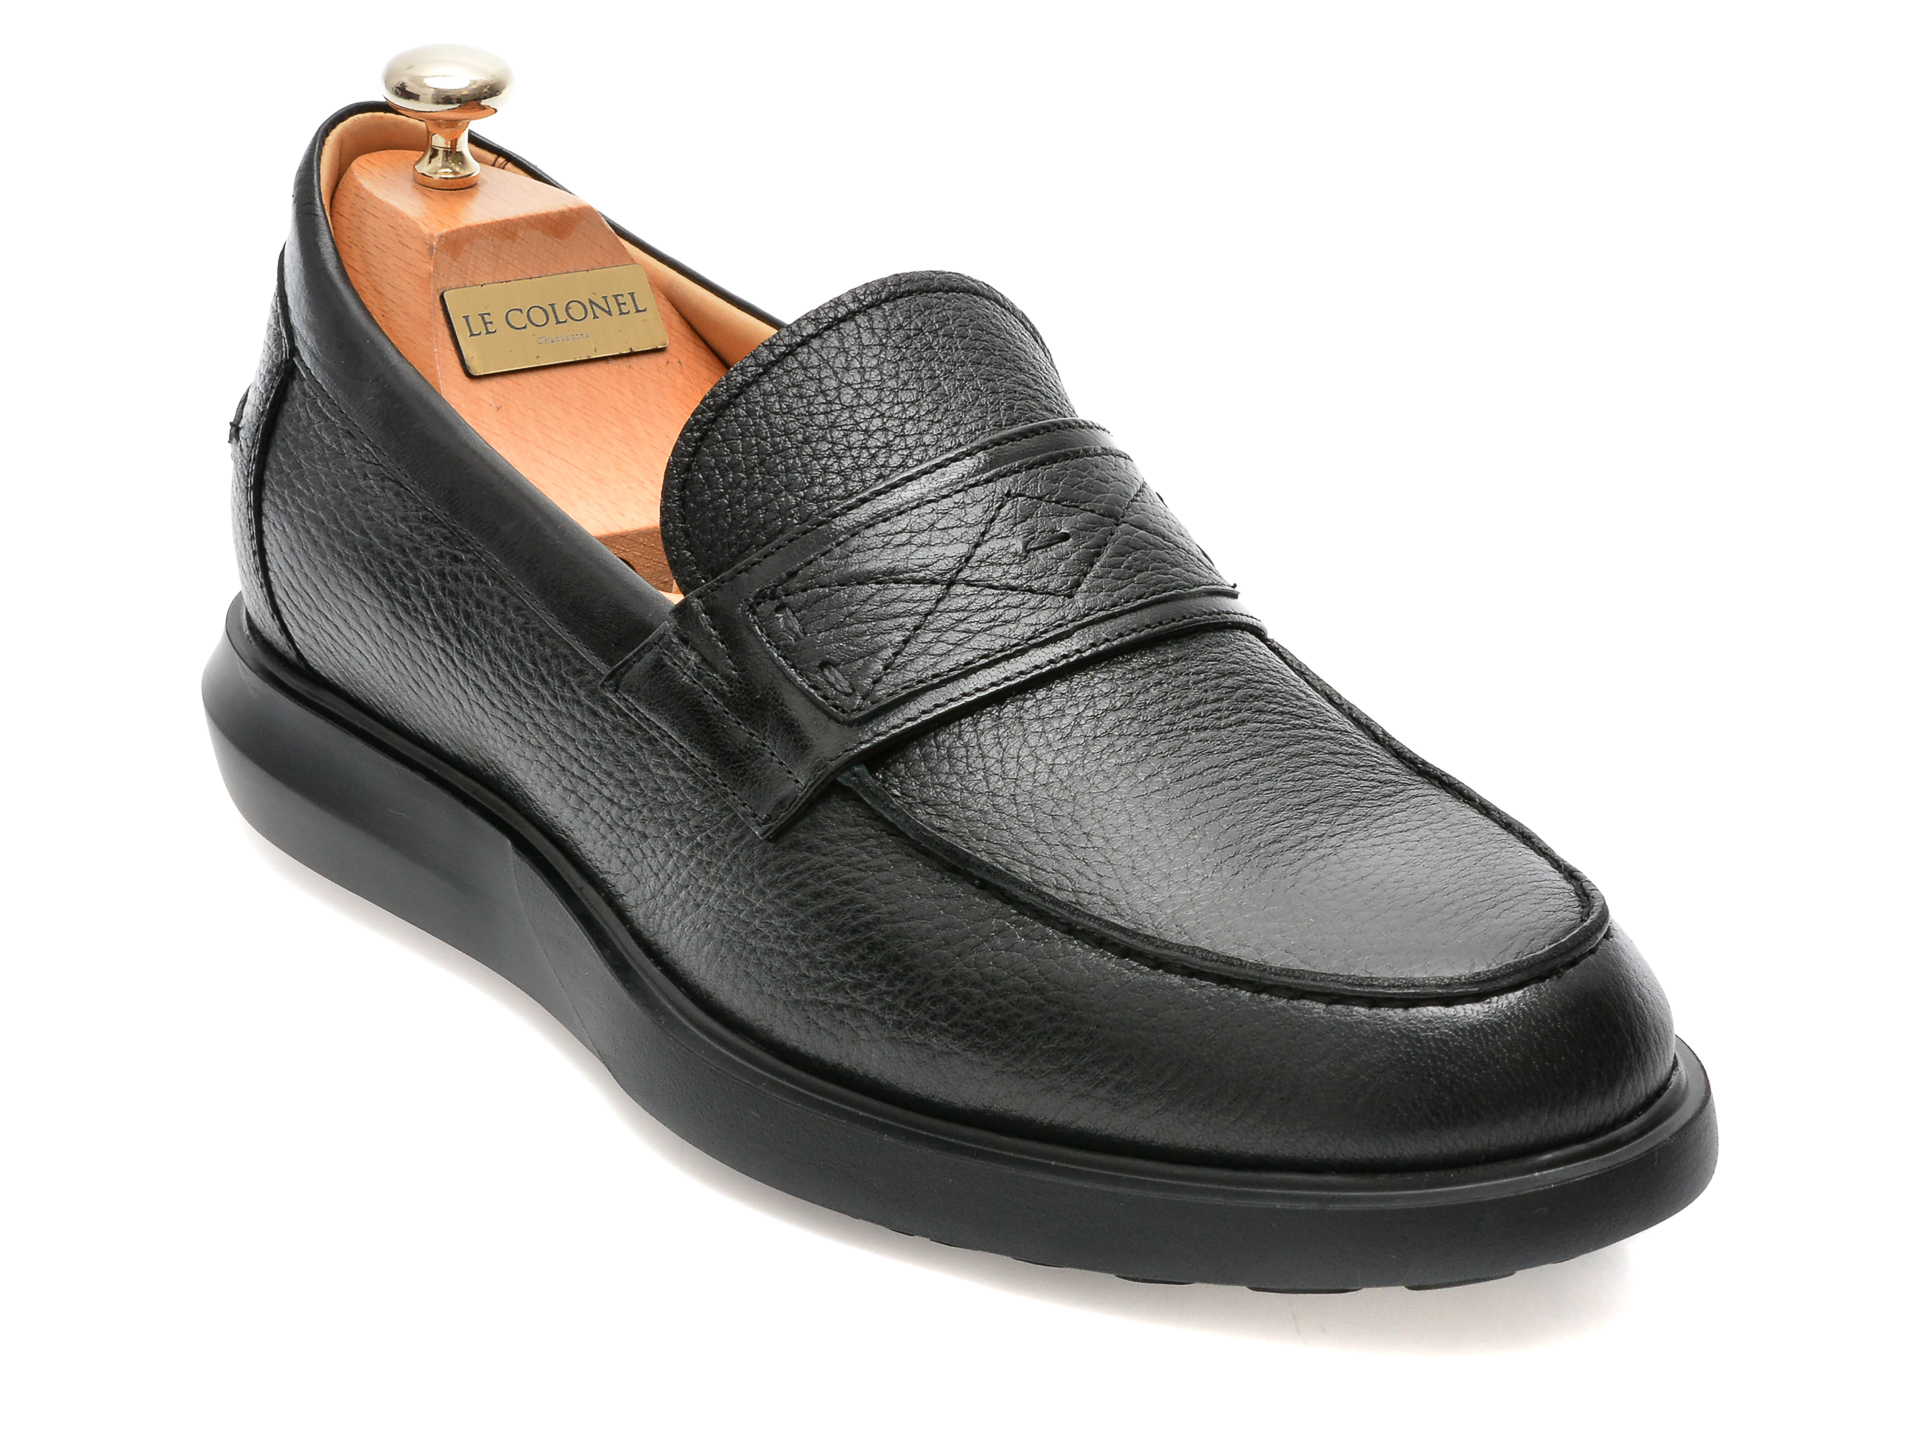 Pantofi LE COLONEL negri, 66616, din piele naturala barbati 2023-03-21